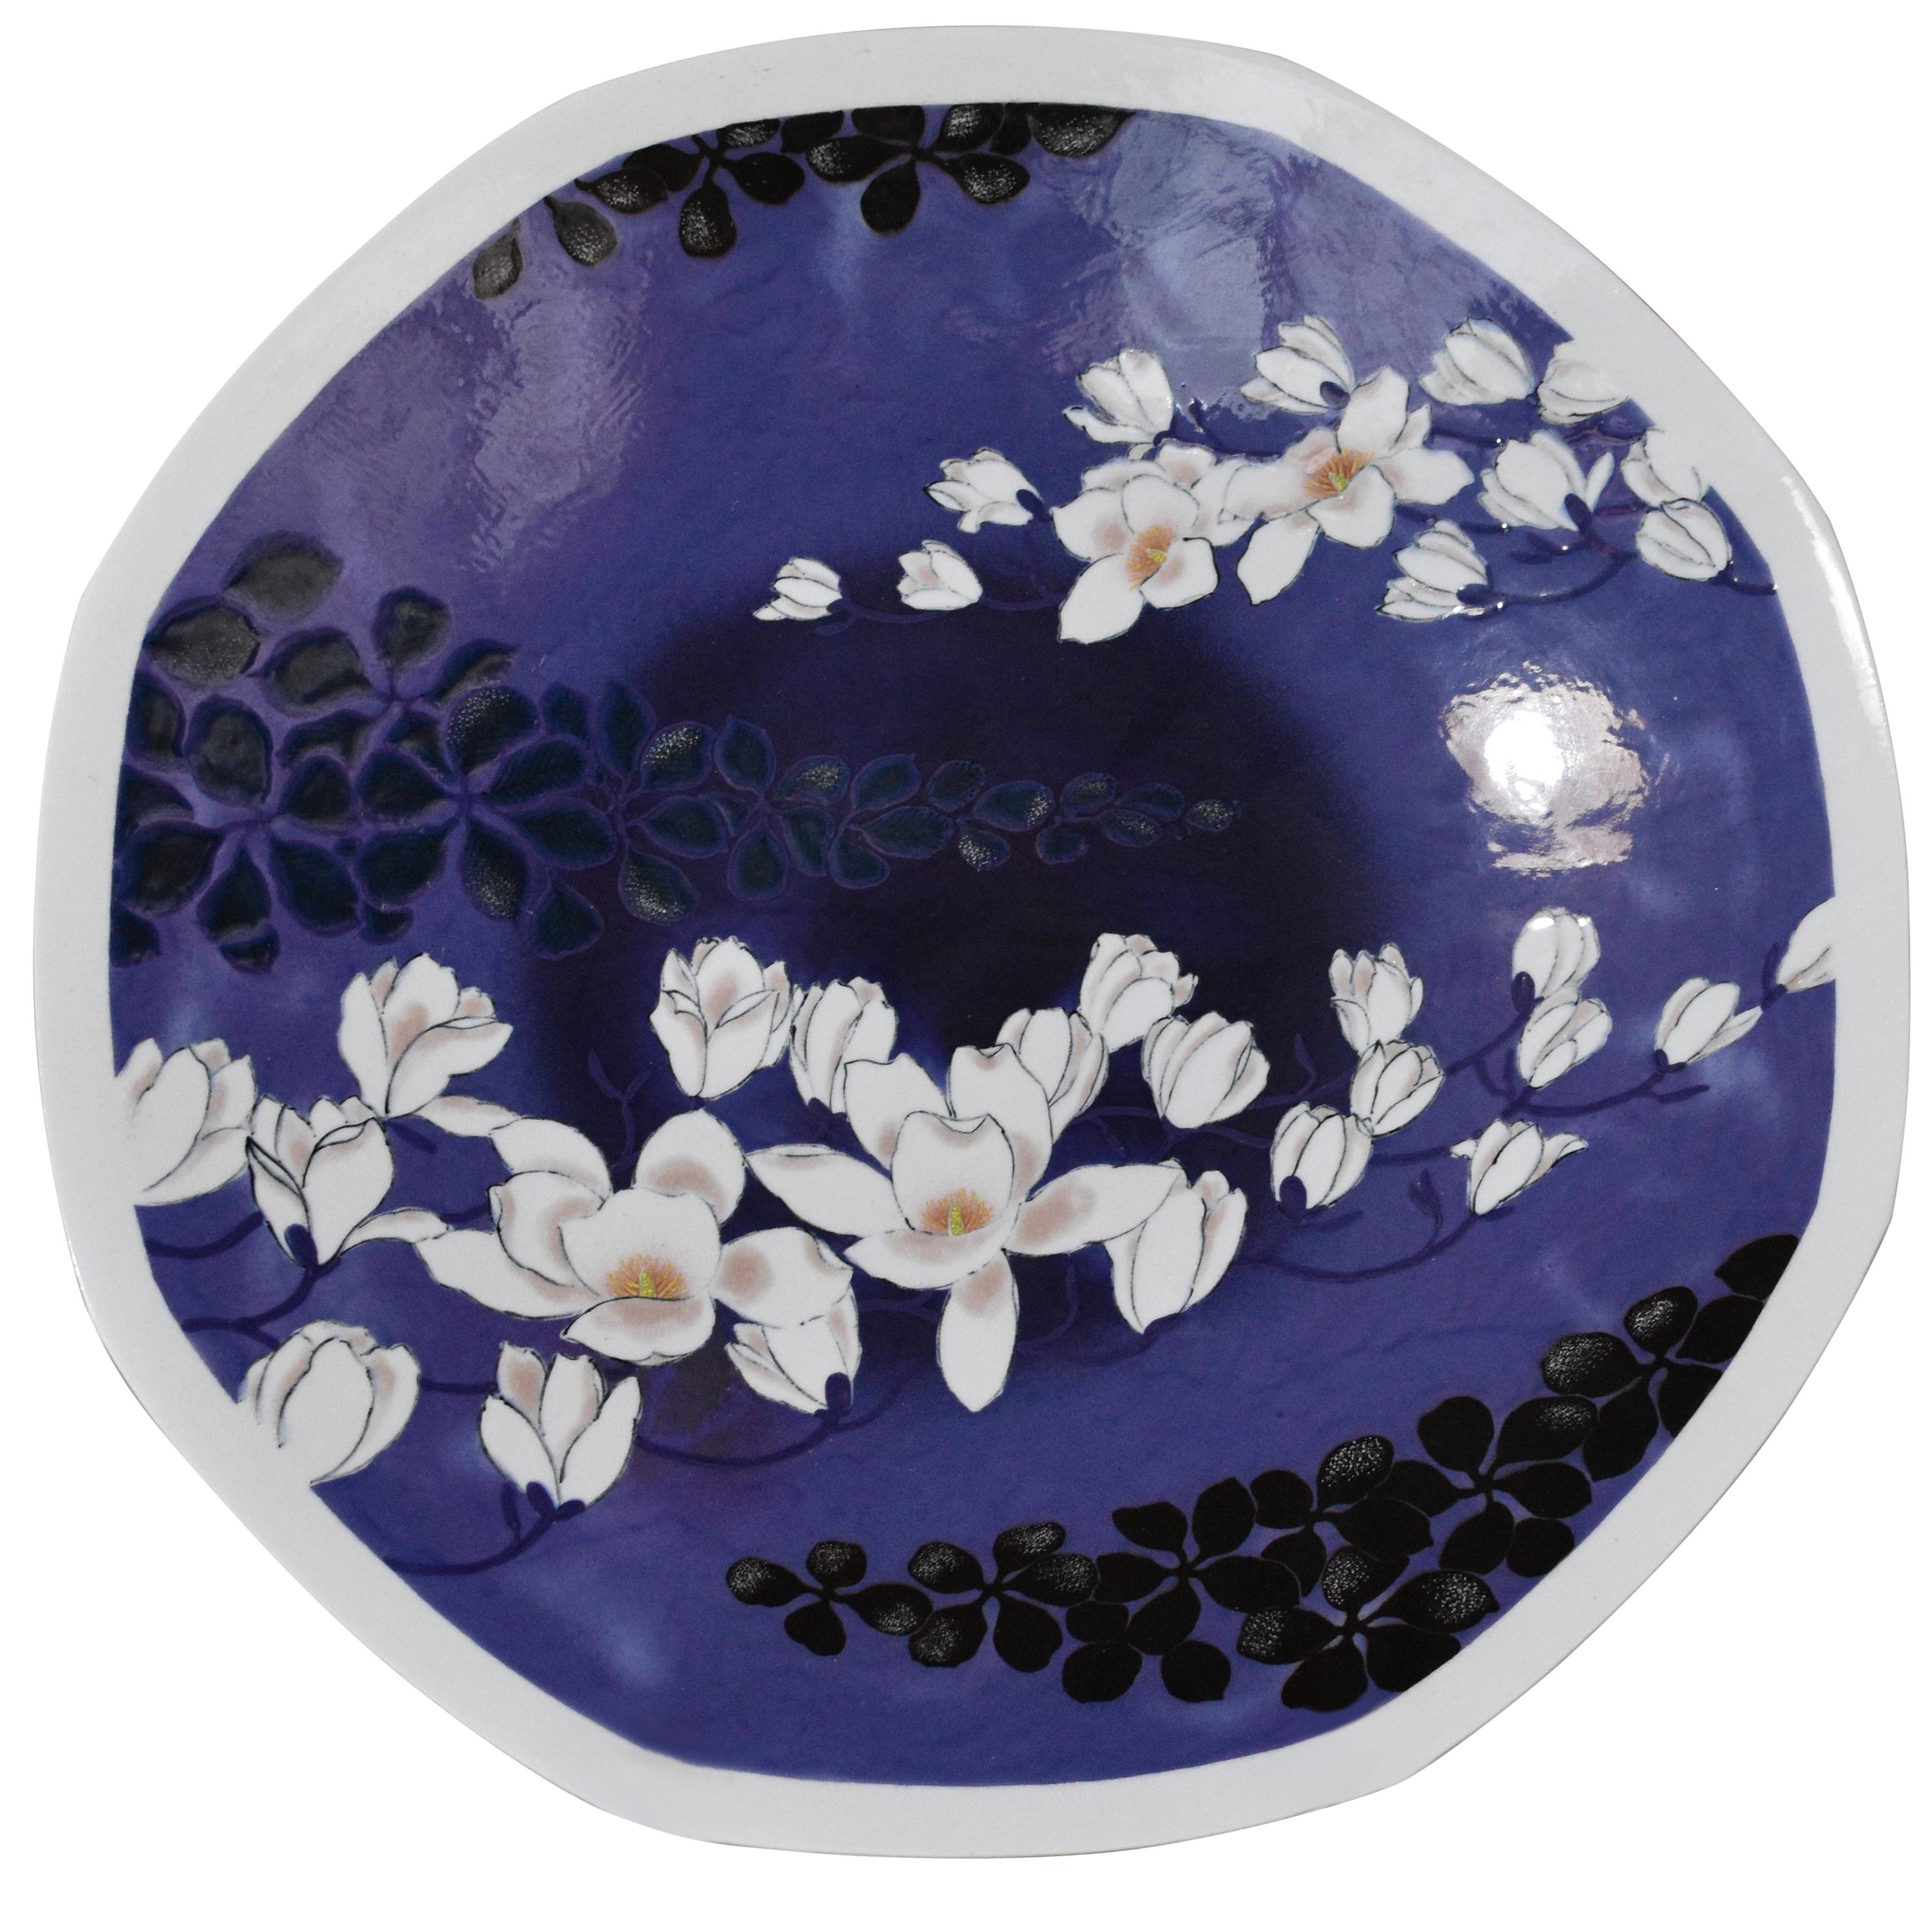 Zeitgenössische japanische schwarz-lila-weiße Porzellanschale des Meisterkünstlers